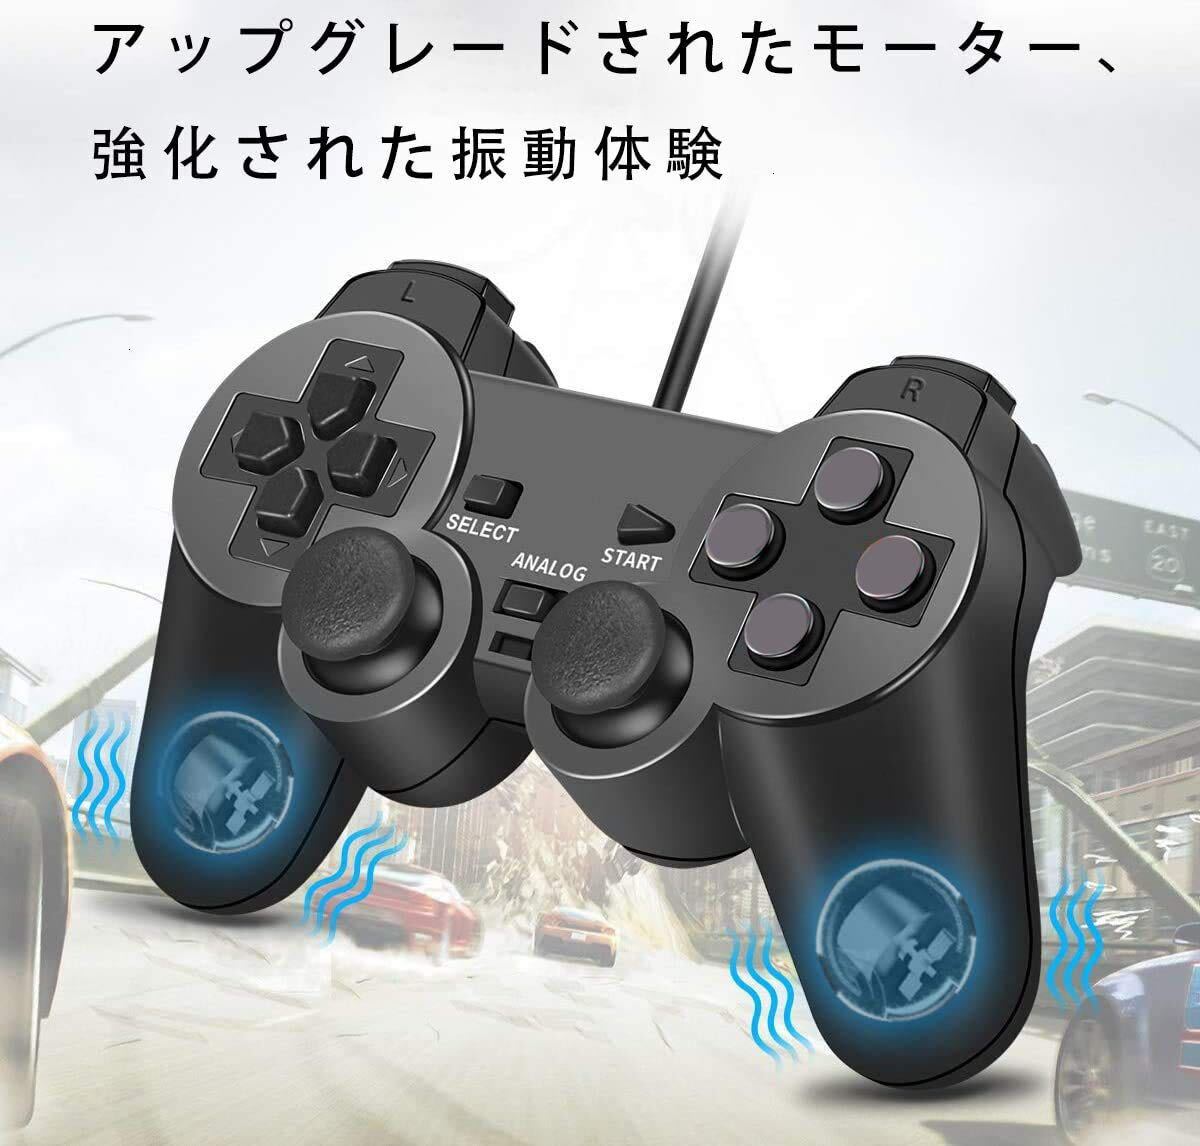 有線 PS2用 アナログ コントローラー playstation2 対応 ゲームパッド コントローラー ブラック 